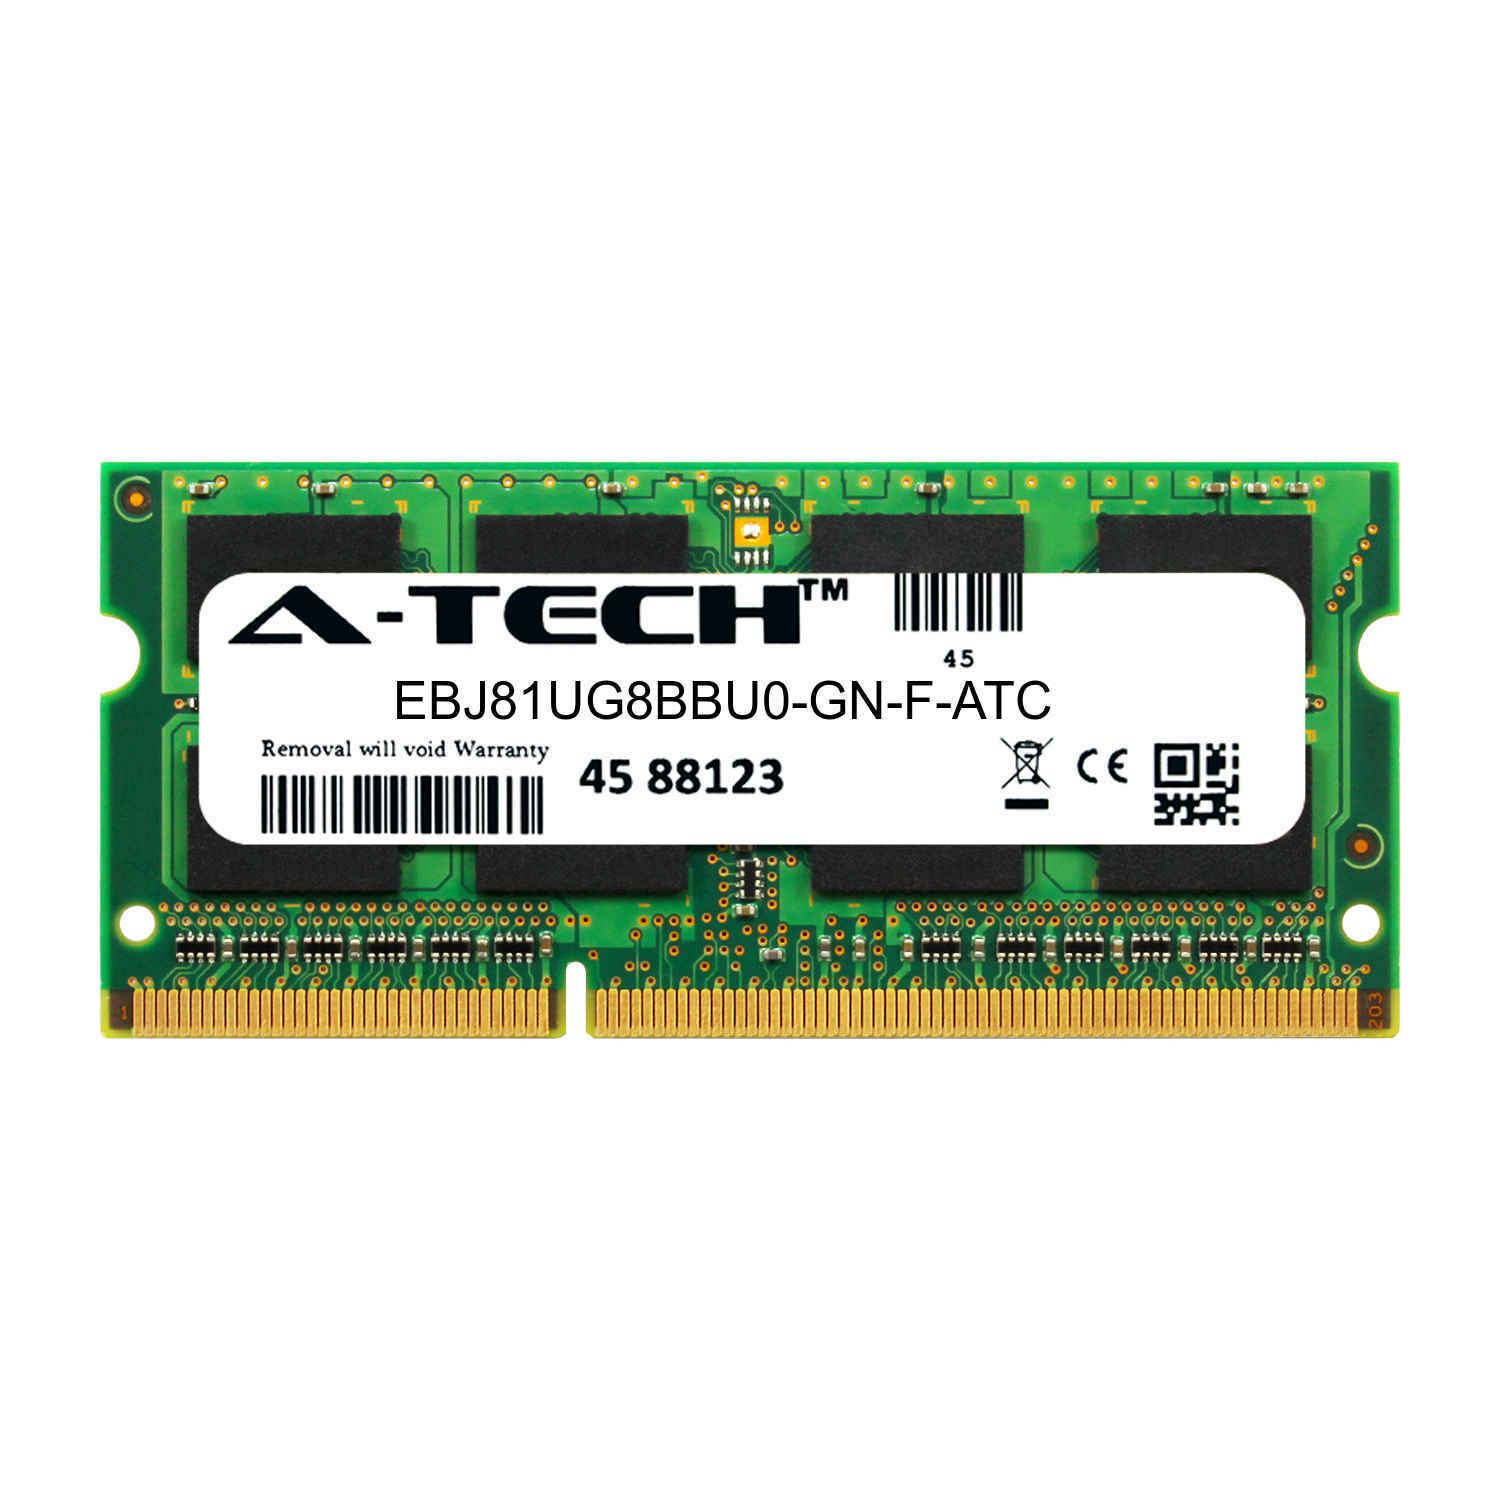 8GB DDR3 PC3-12800 SODIMM (Elpida EBJ81UG8BBU0-GN-F Equivalent) Memory RAM